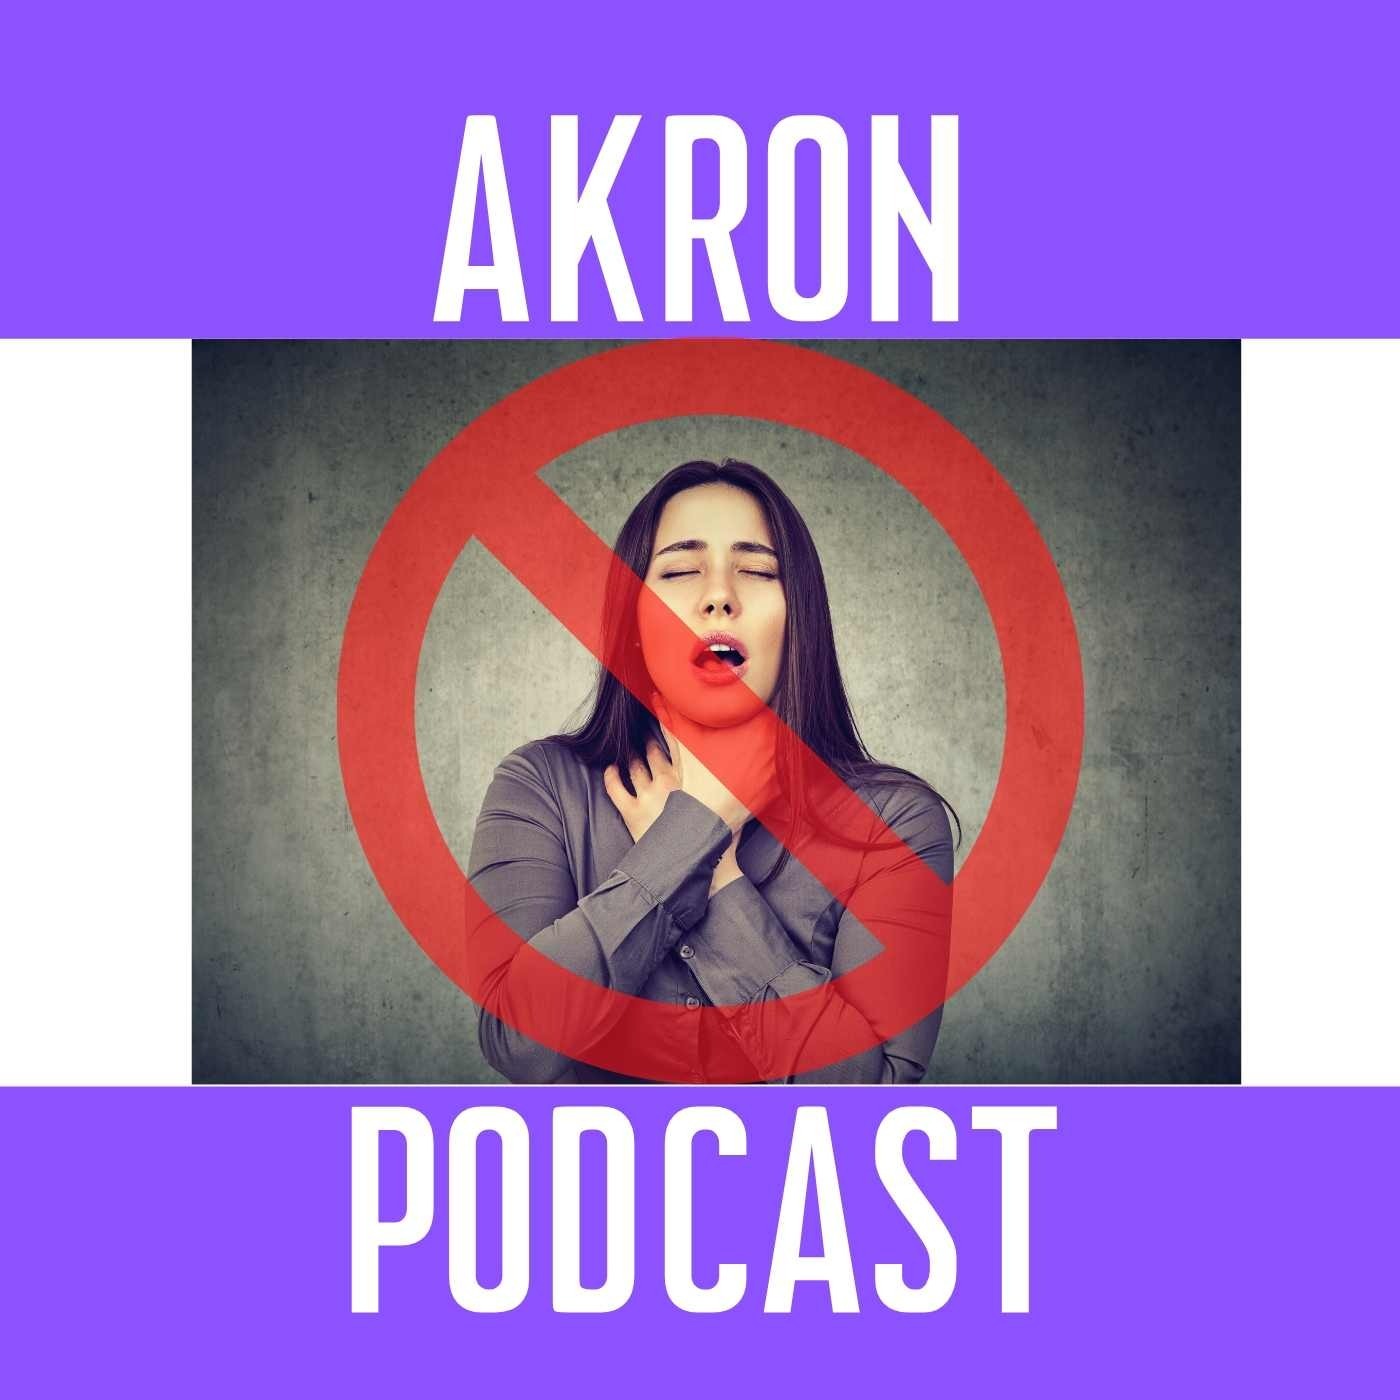 Artwork for podcast Akron Podcast